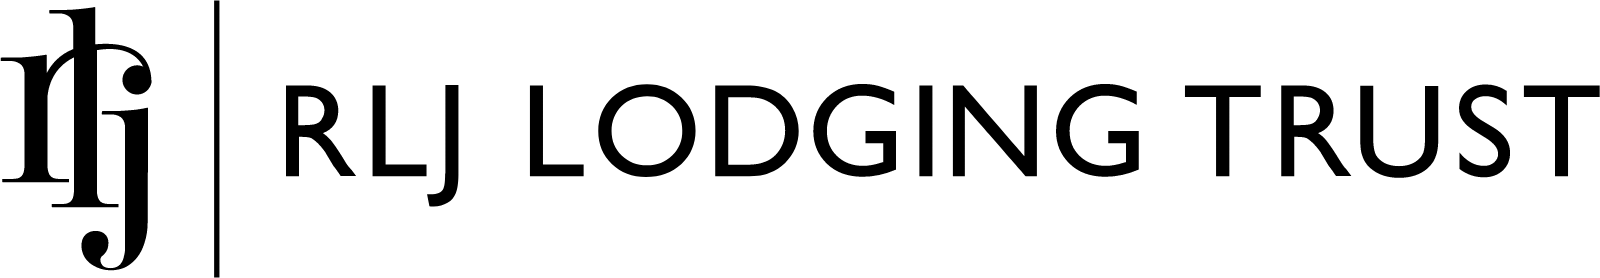 RLJ Lodging Trust logo large (transparent PNG)